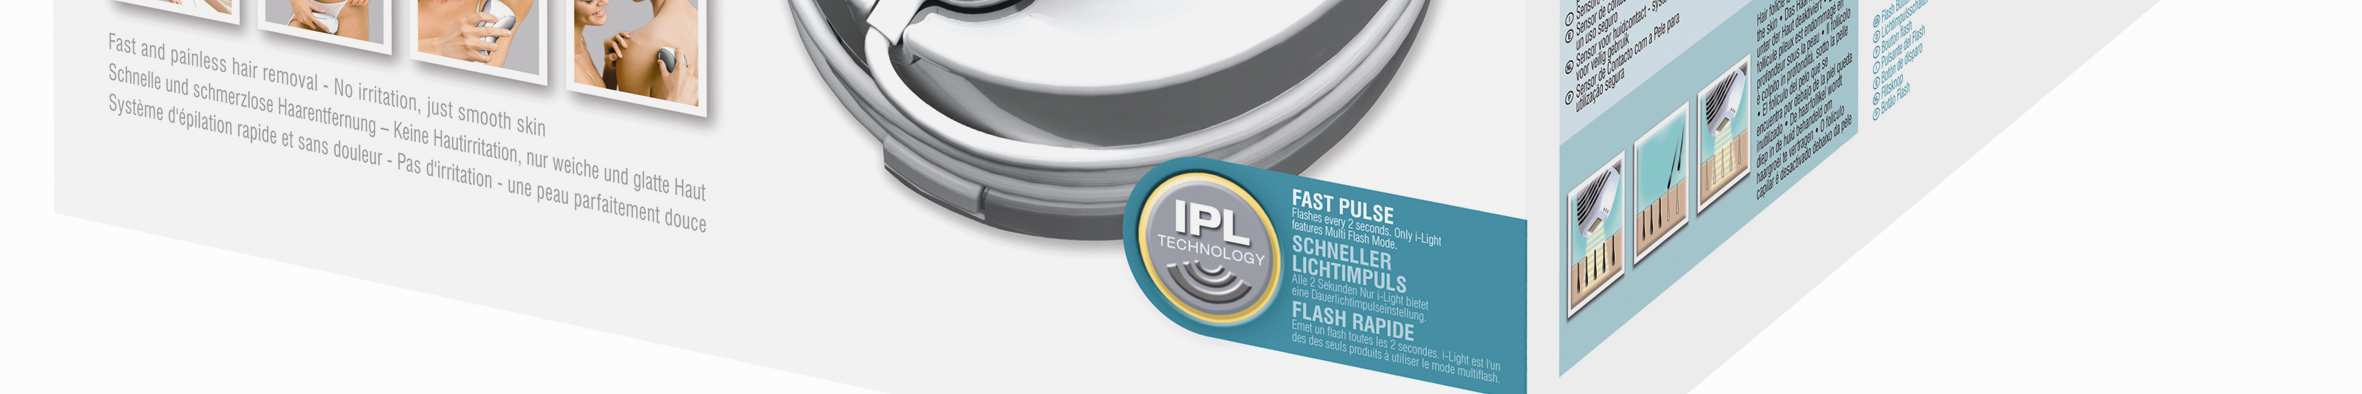 Depilace IPL4000 I-Light Essential IPL technologie pro bezbolestné odstraňování chloupků bez podráždění pleti. Užijte si výsledky, které vydrží až 12 týdnů.